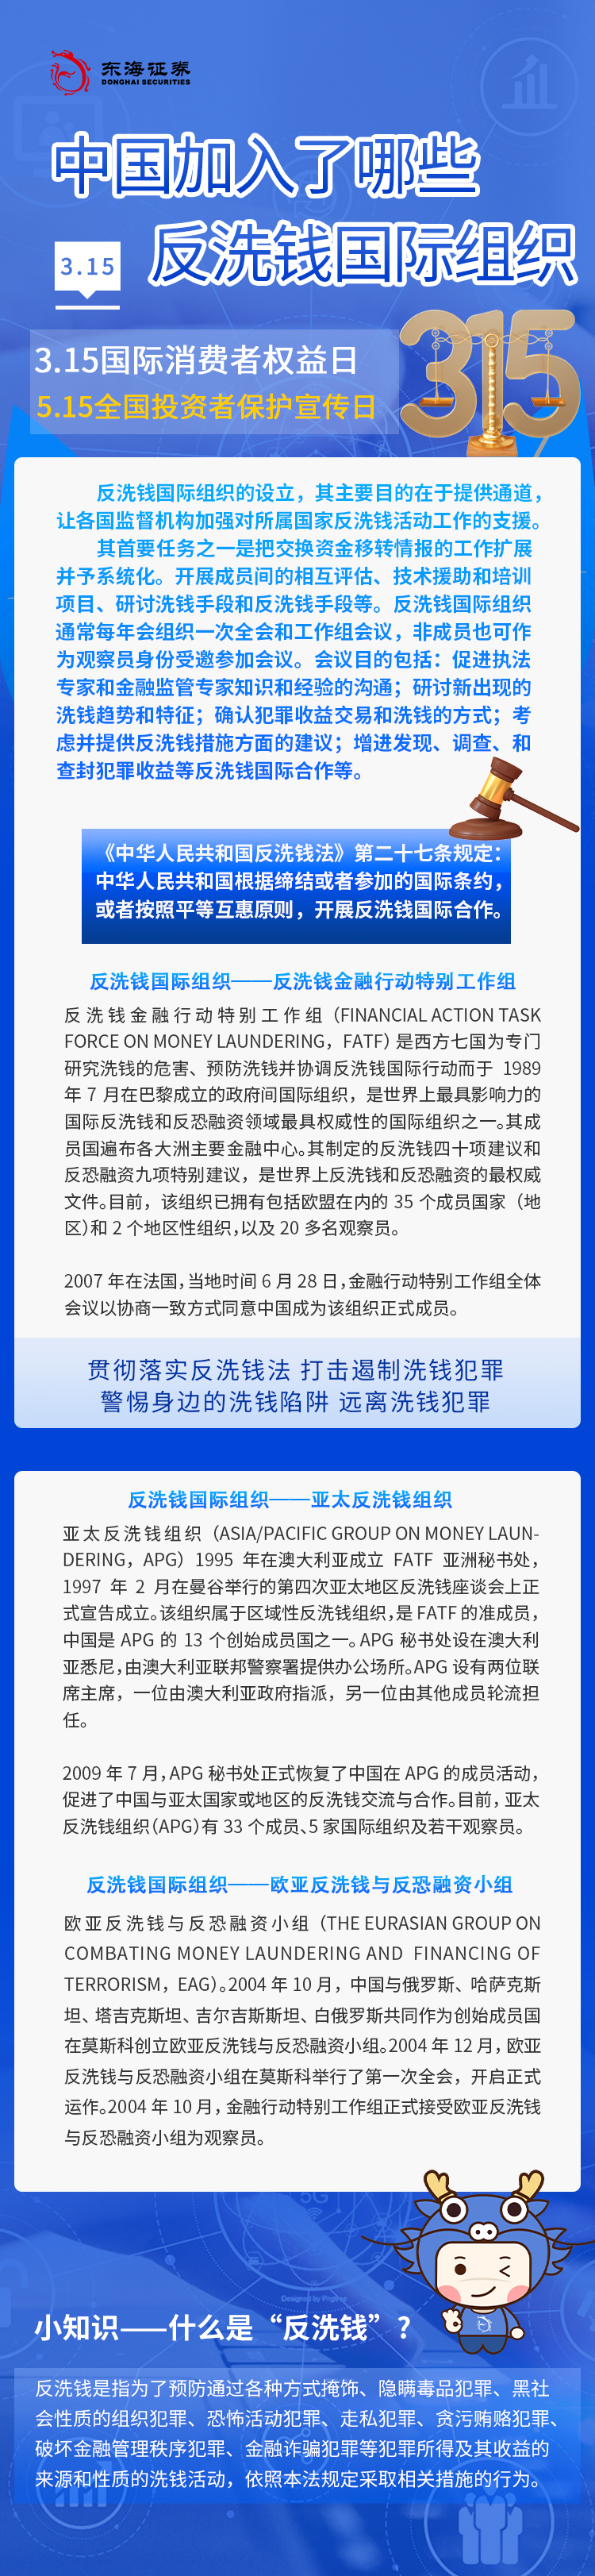 中国加入了哪些反洗钱国际组织.jpg